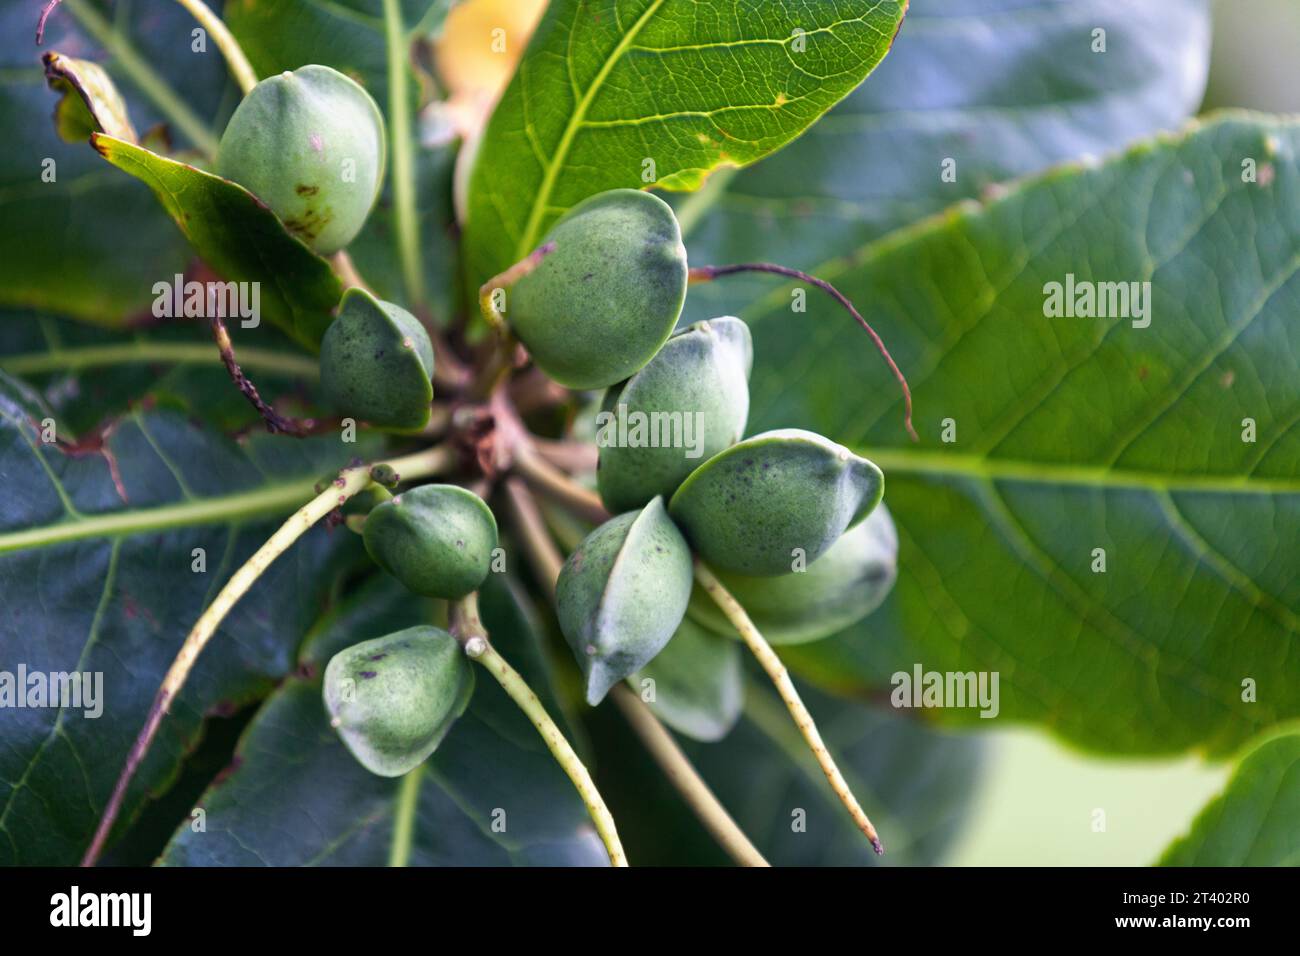 La catappa di Terminalia è un grande albero tropicale della famiglia degli alberi di leadwood, Combretaceae, che cresce principalmente nelle regioni tropicali dell'Asia, Africa, Foto Stock